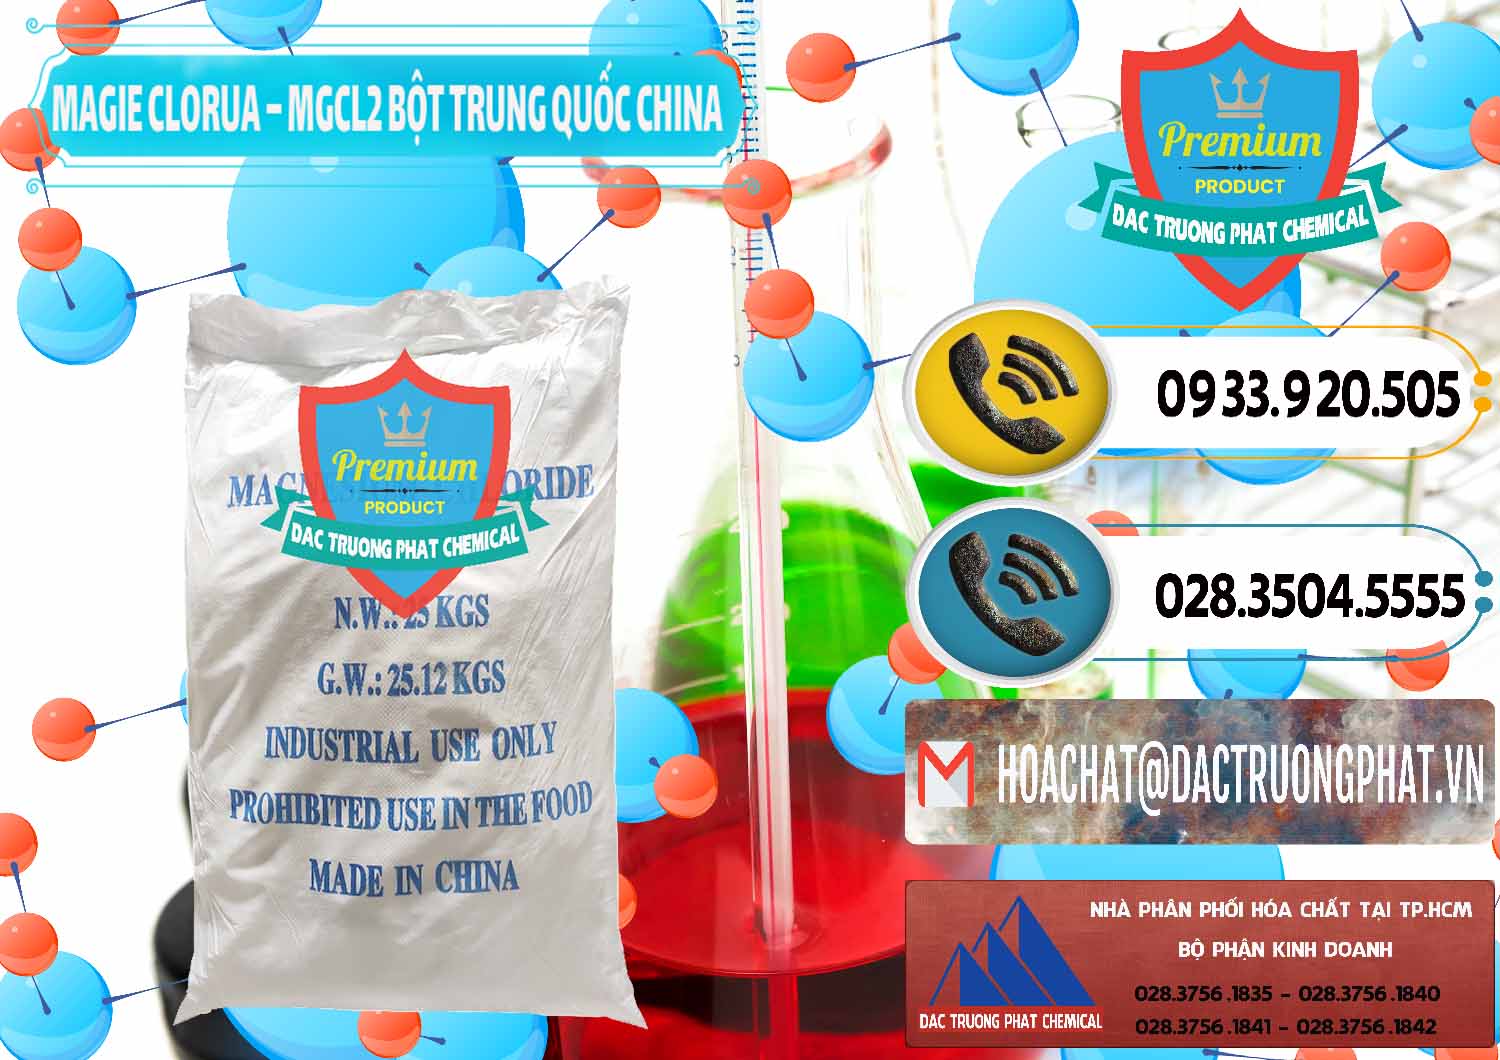 Nhập khẩu - bán Magie Clorua – MGCL2 96% Dạng Bột Bao Chữ Xanh Trung Quốc China - 0207 - Cty chuyên kinh doanh _ cung cấp hóa chất tại TP.HCM - hoachatdetnhuom.vn